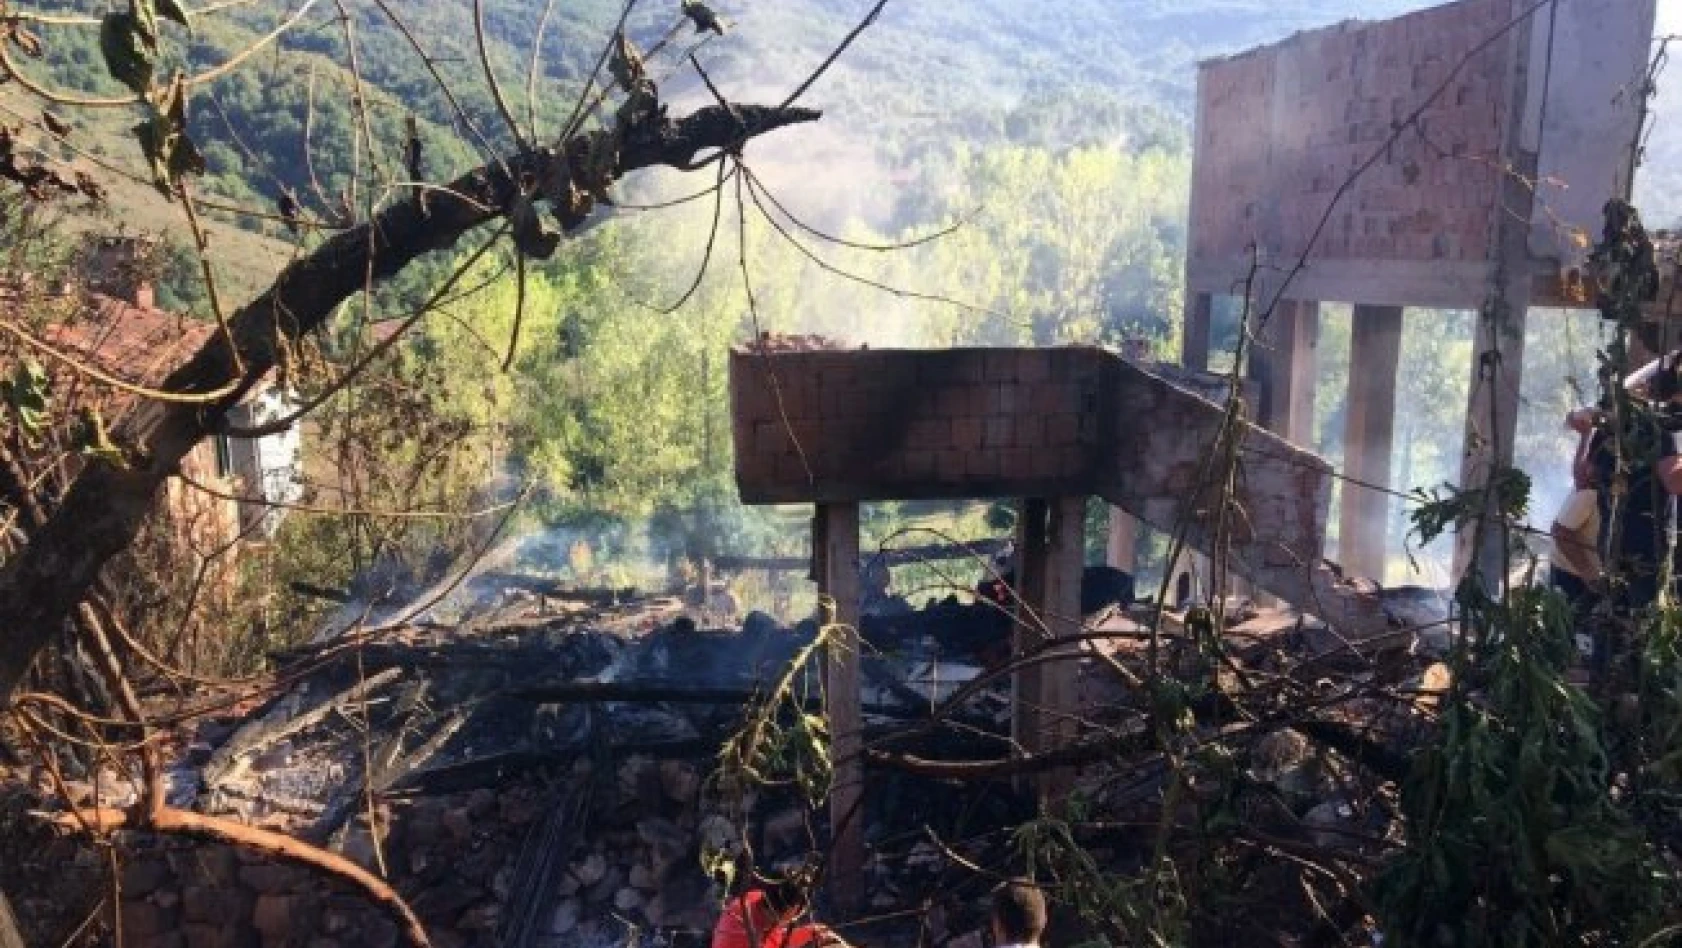 Kastamonu'da yangın: 2 ev kullanılamaz hale geldi